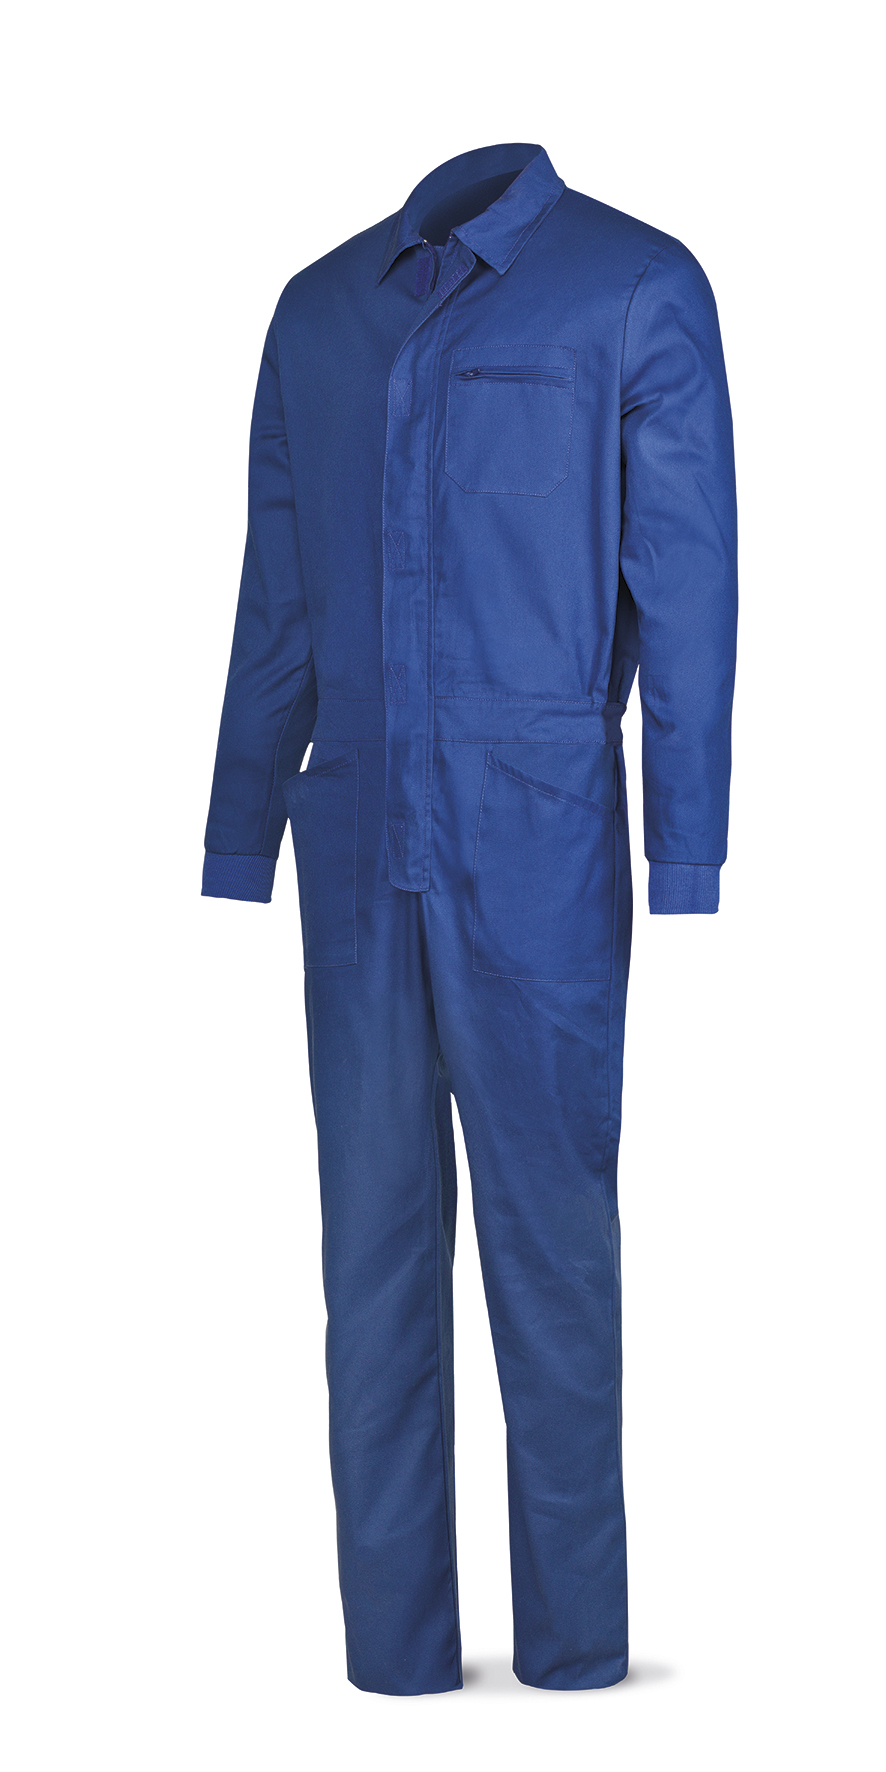 388-BT Vetements de travail laboral Série Basics Combinaison bleu polyester/coton 200 g.